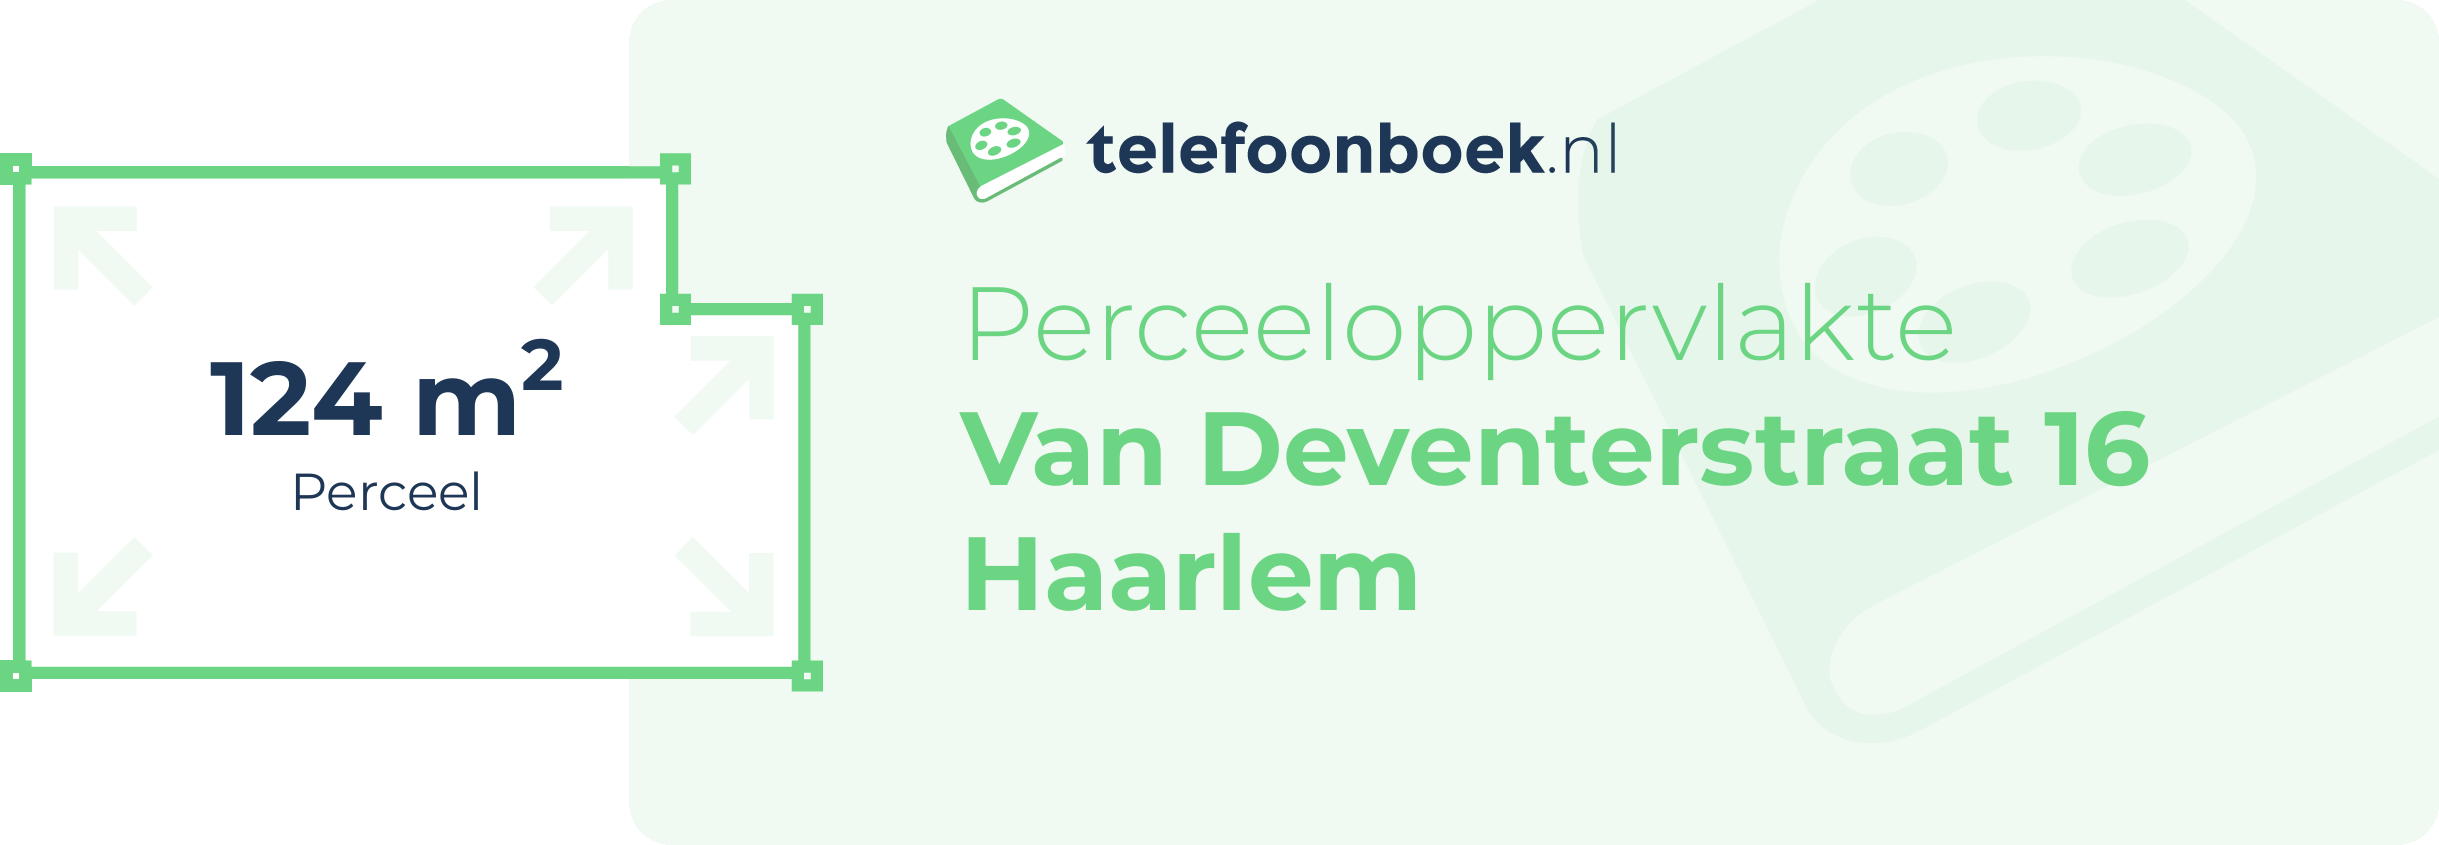 Perceeloppervlakte Van Deventerstraat 16 Haarlem